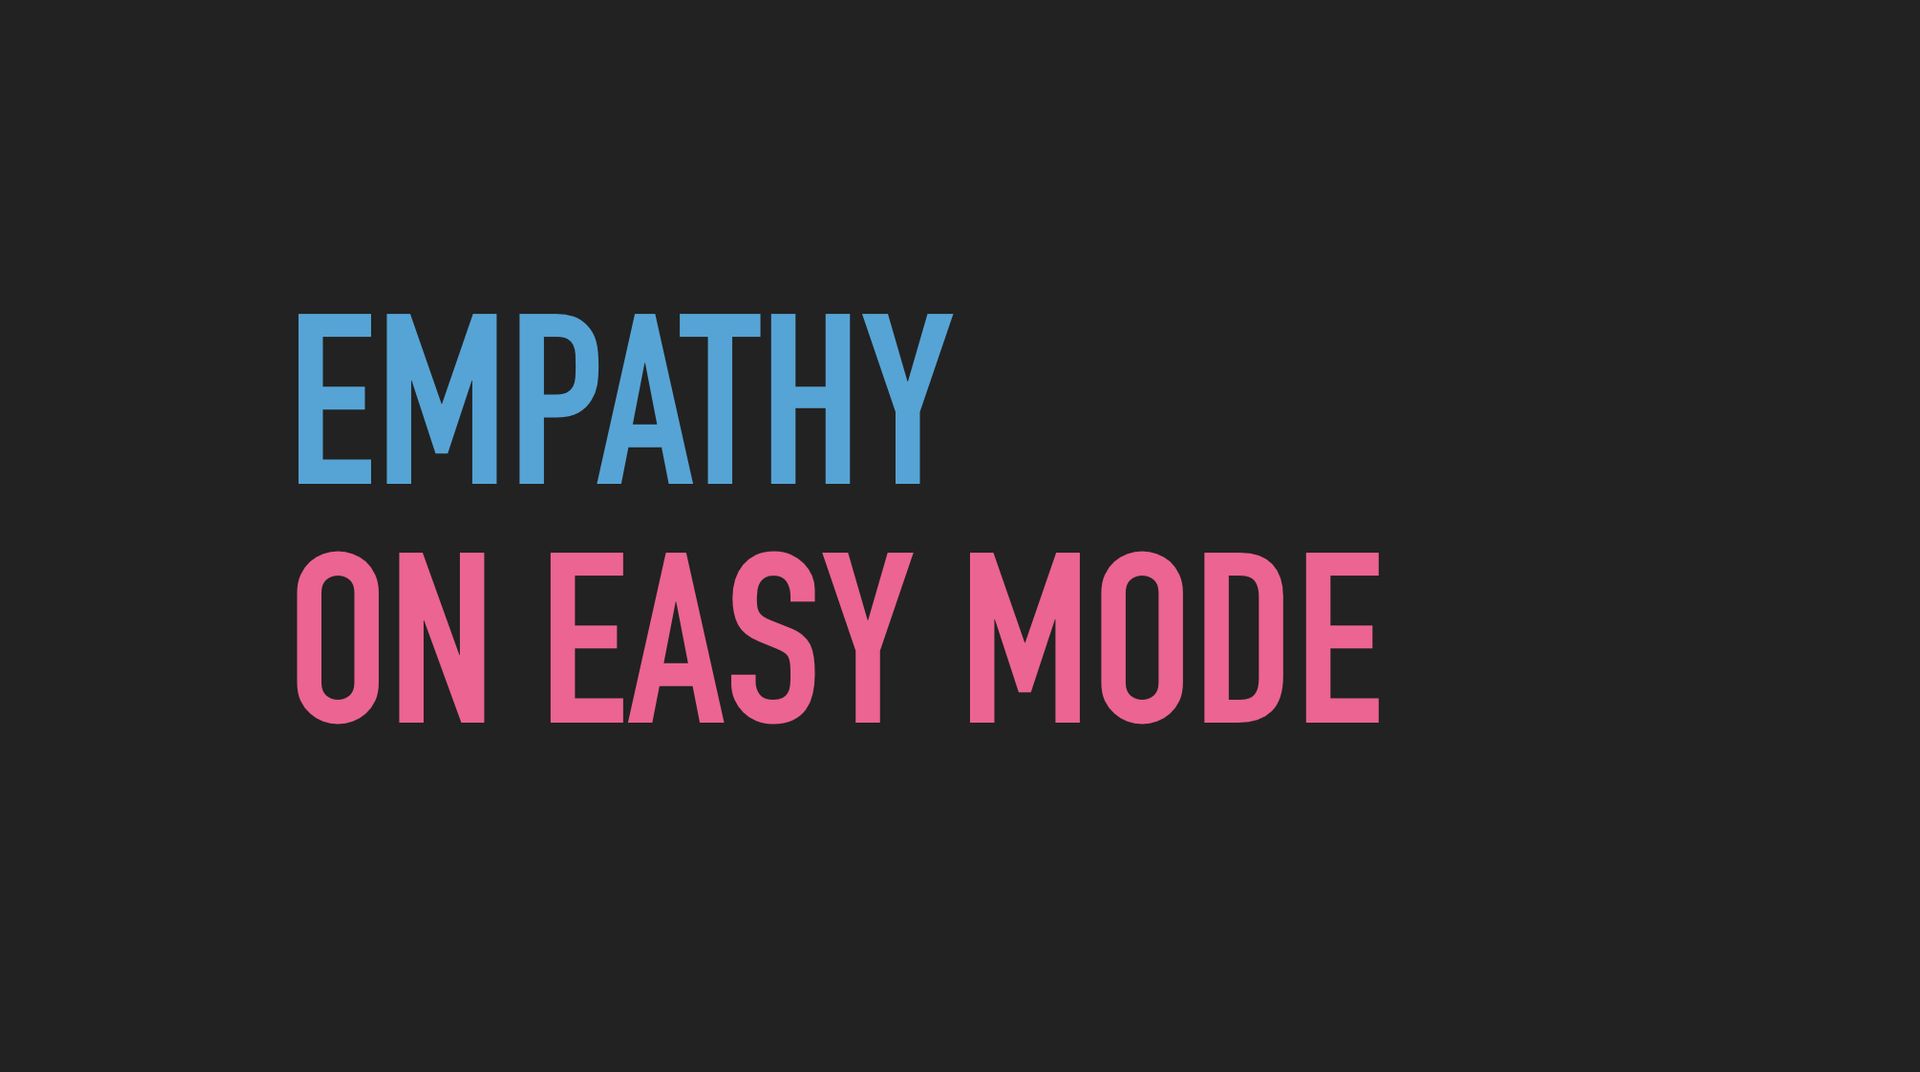 Slide text: Empathy on easy mode.